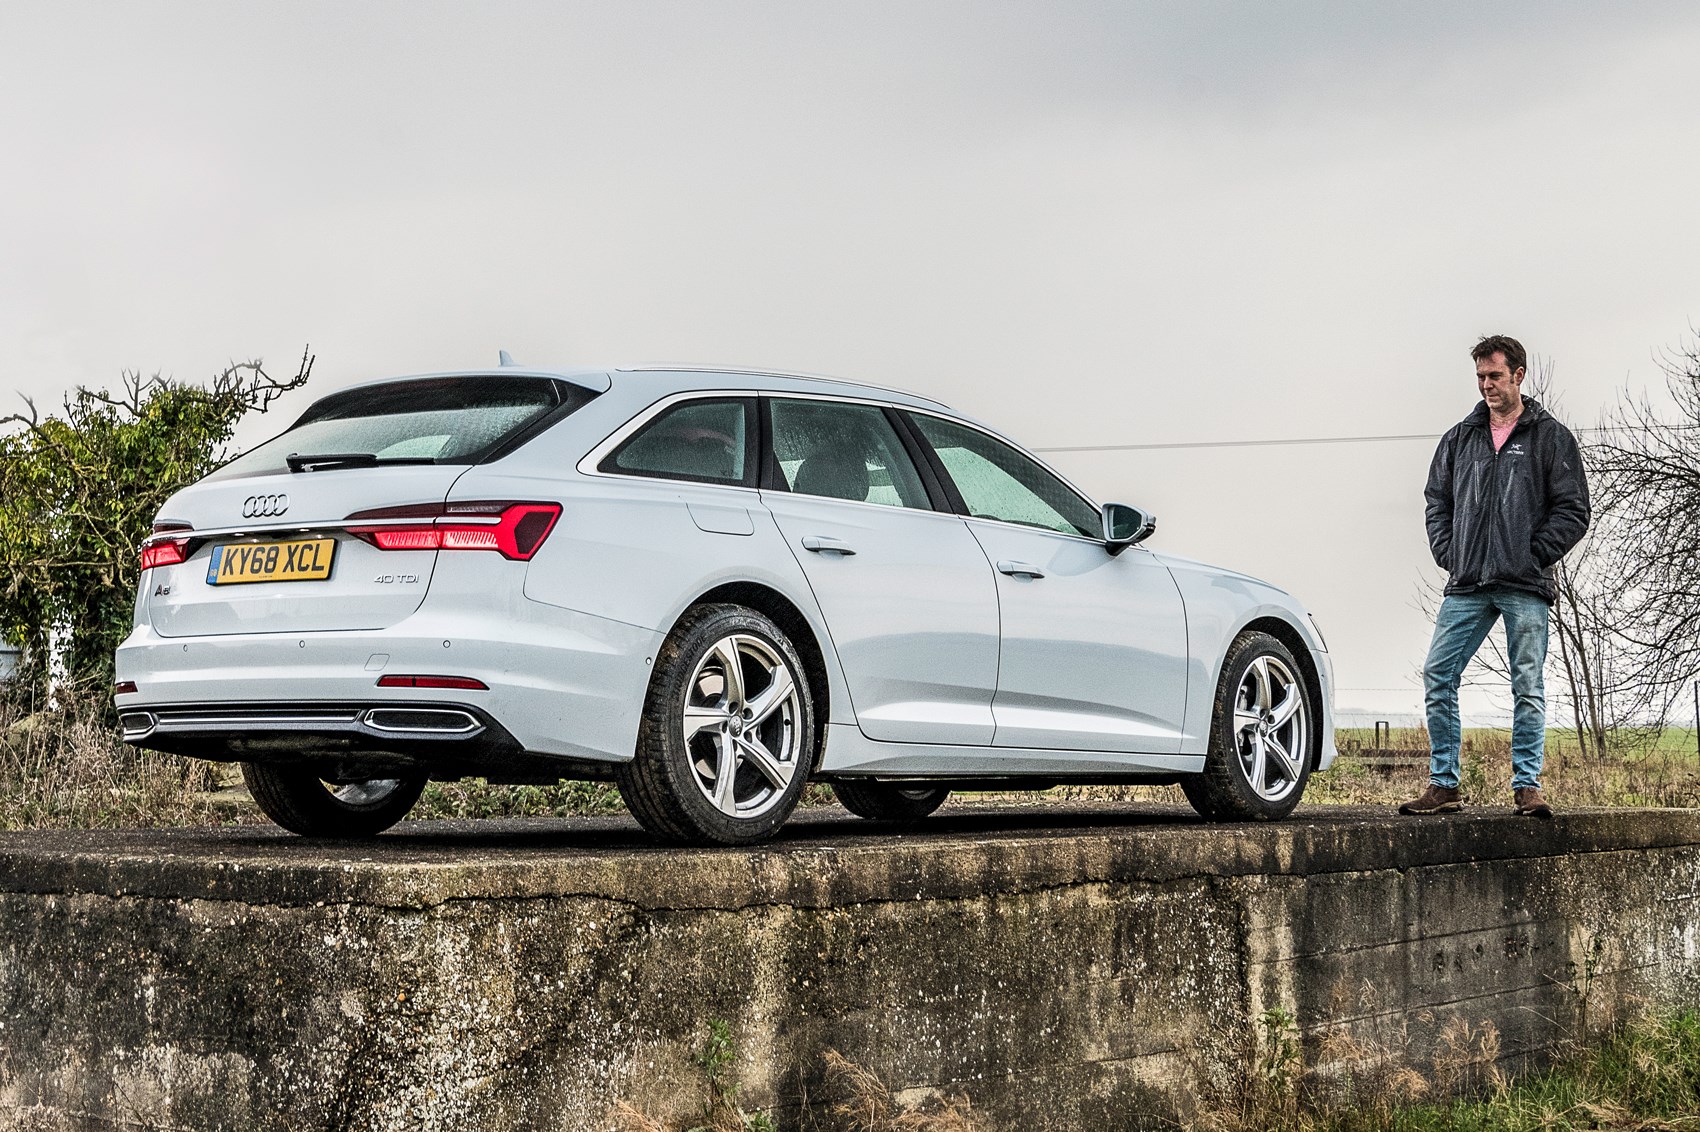 New Audi A6 Avant Long-term Review (2020)